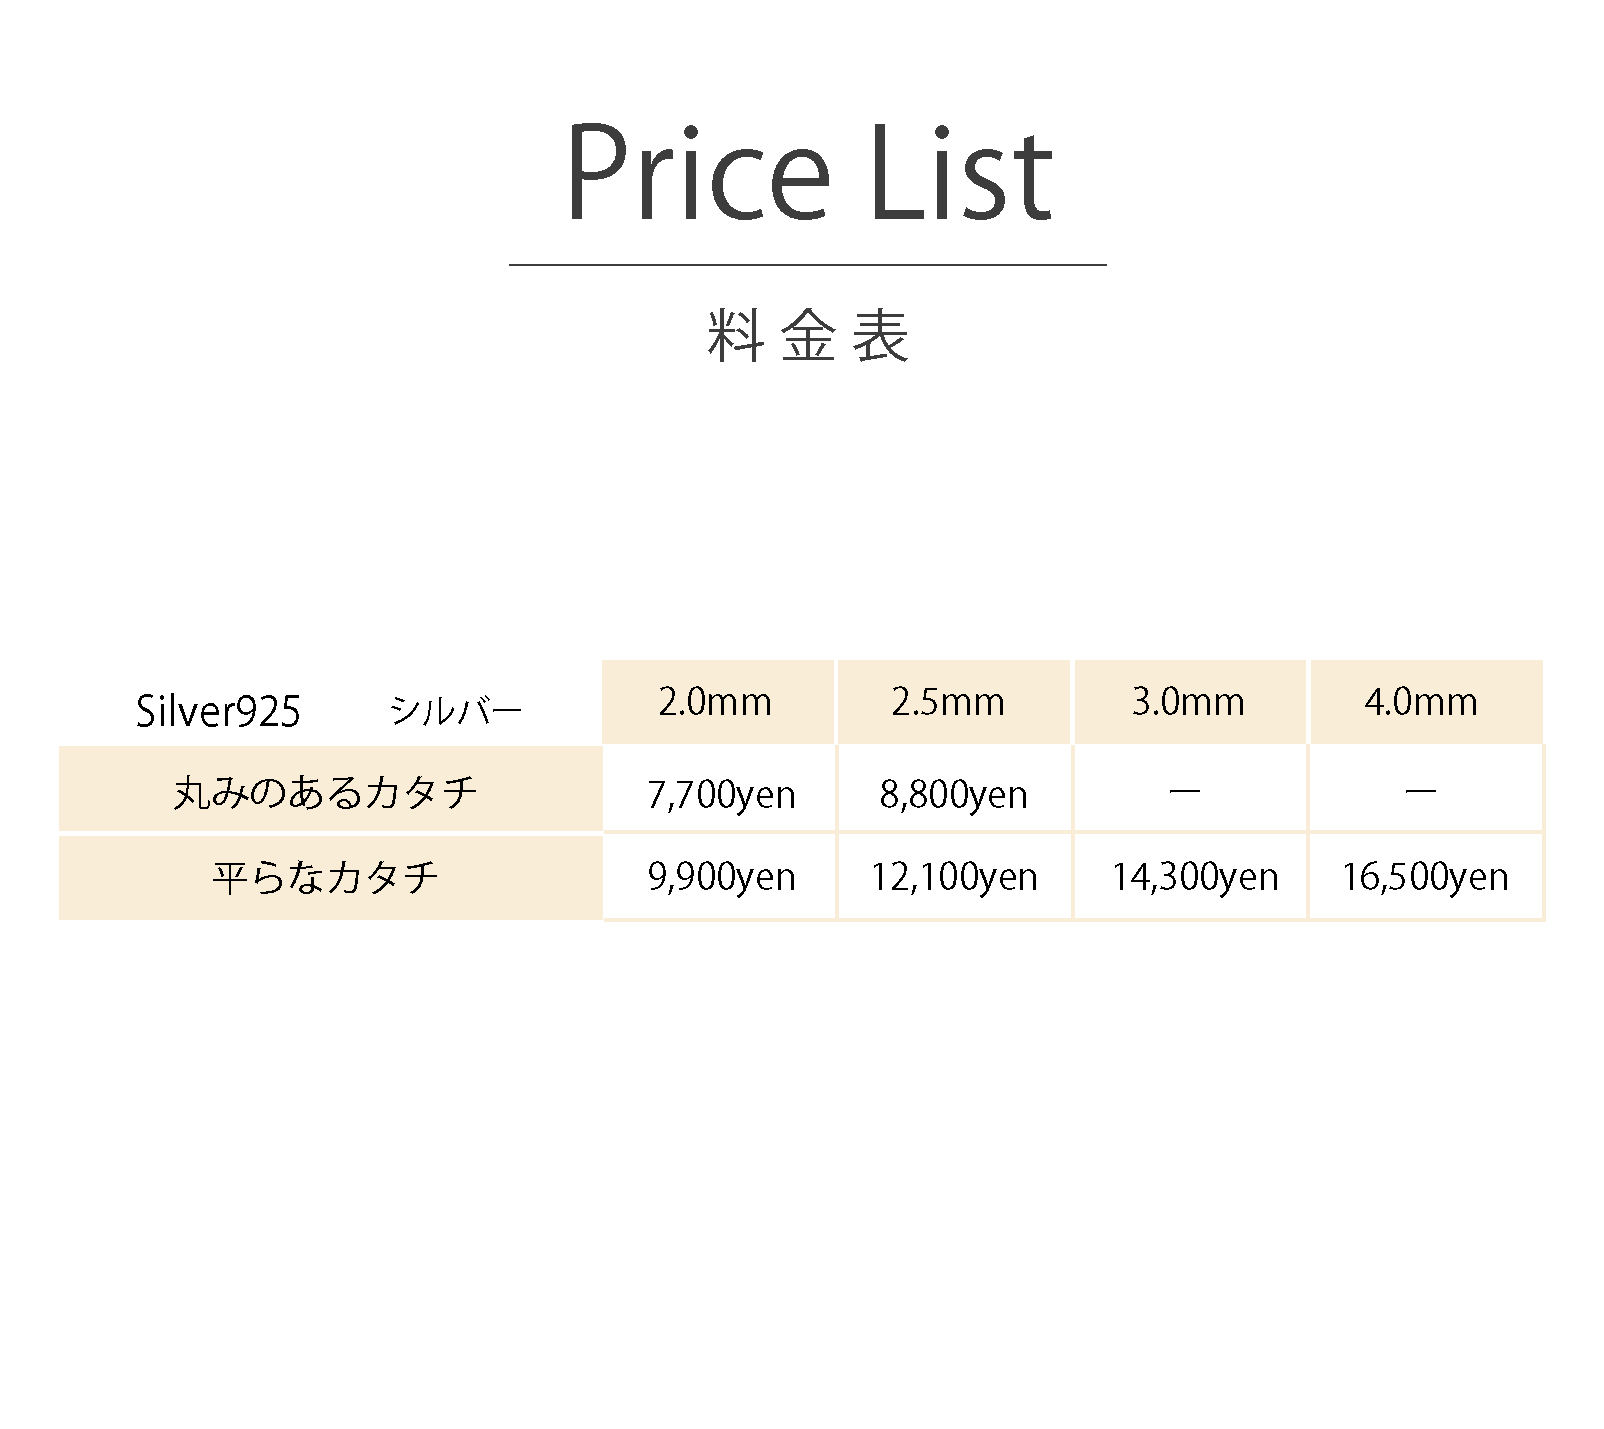 うつくしみ宇和島店バングル作り体験の価格表です